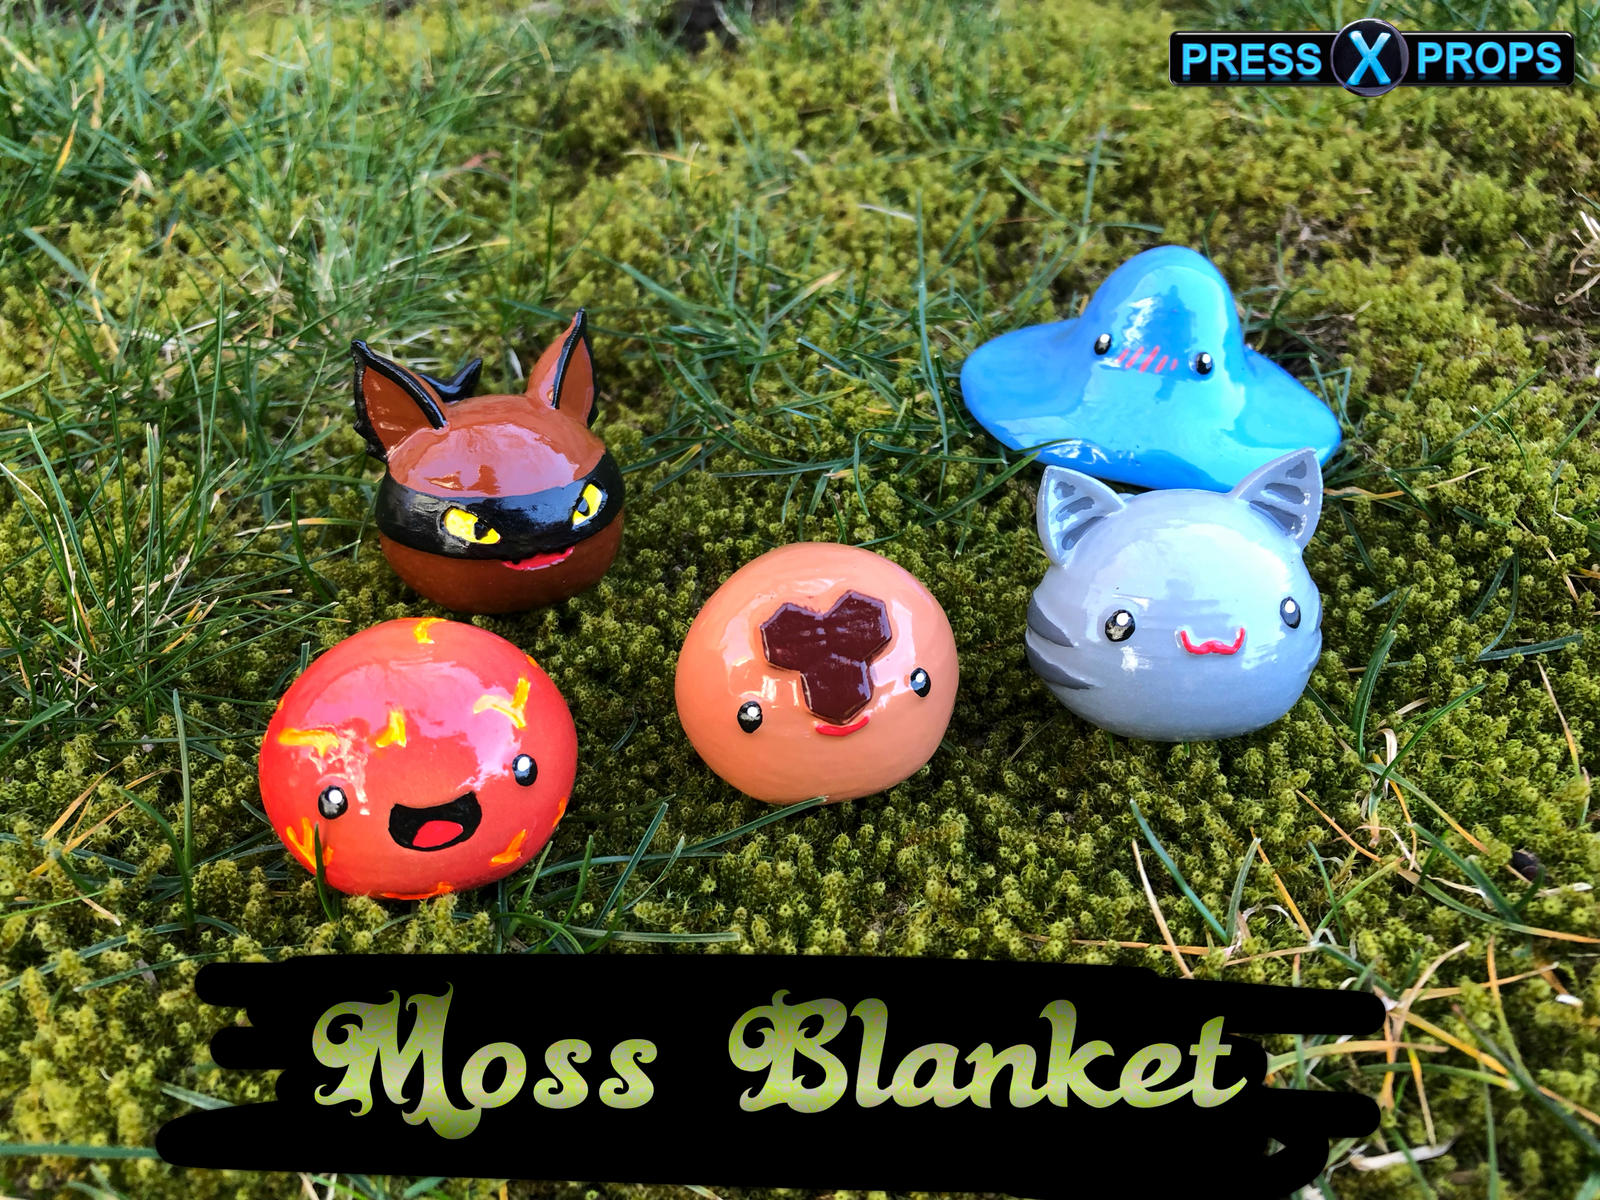 Moss Blanket Slimes by Press-X-Props on DeviantArt